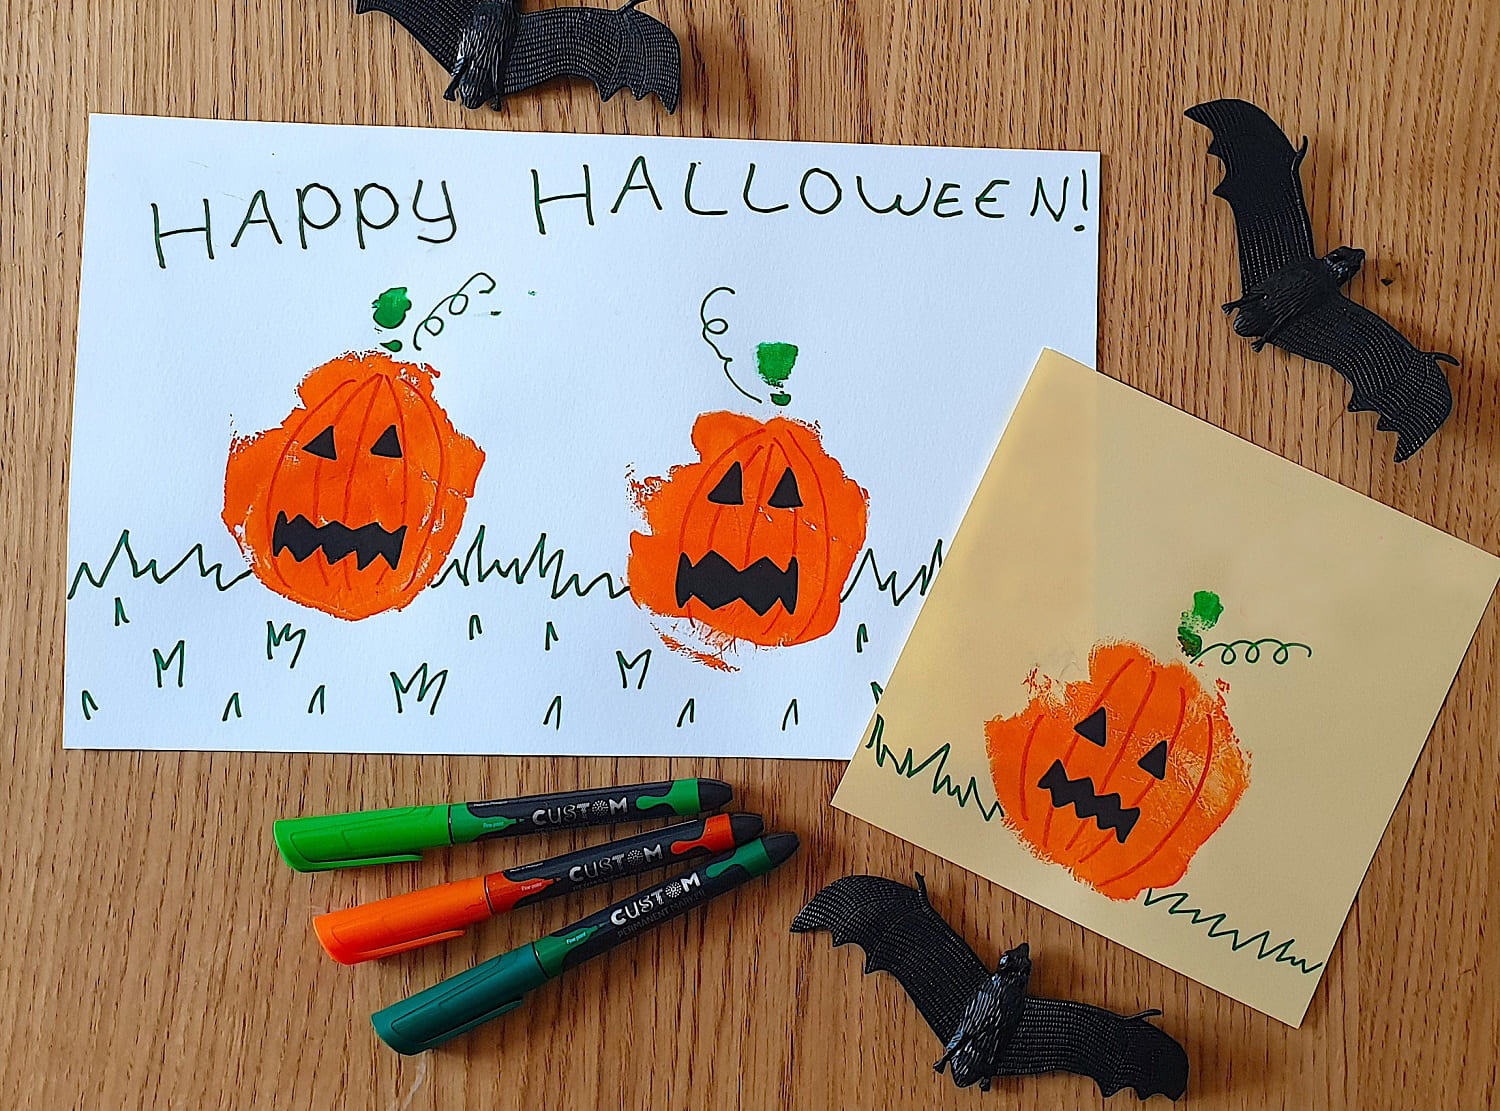 Maped - DIY activity for Halloween - Handprints pictures Pumpkin - 05